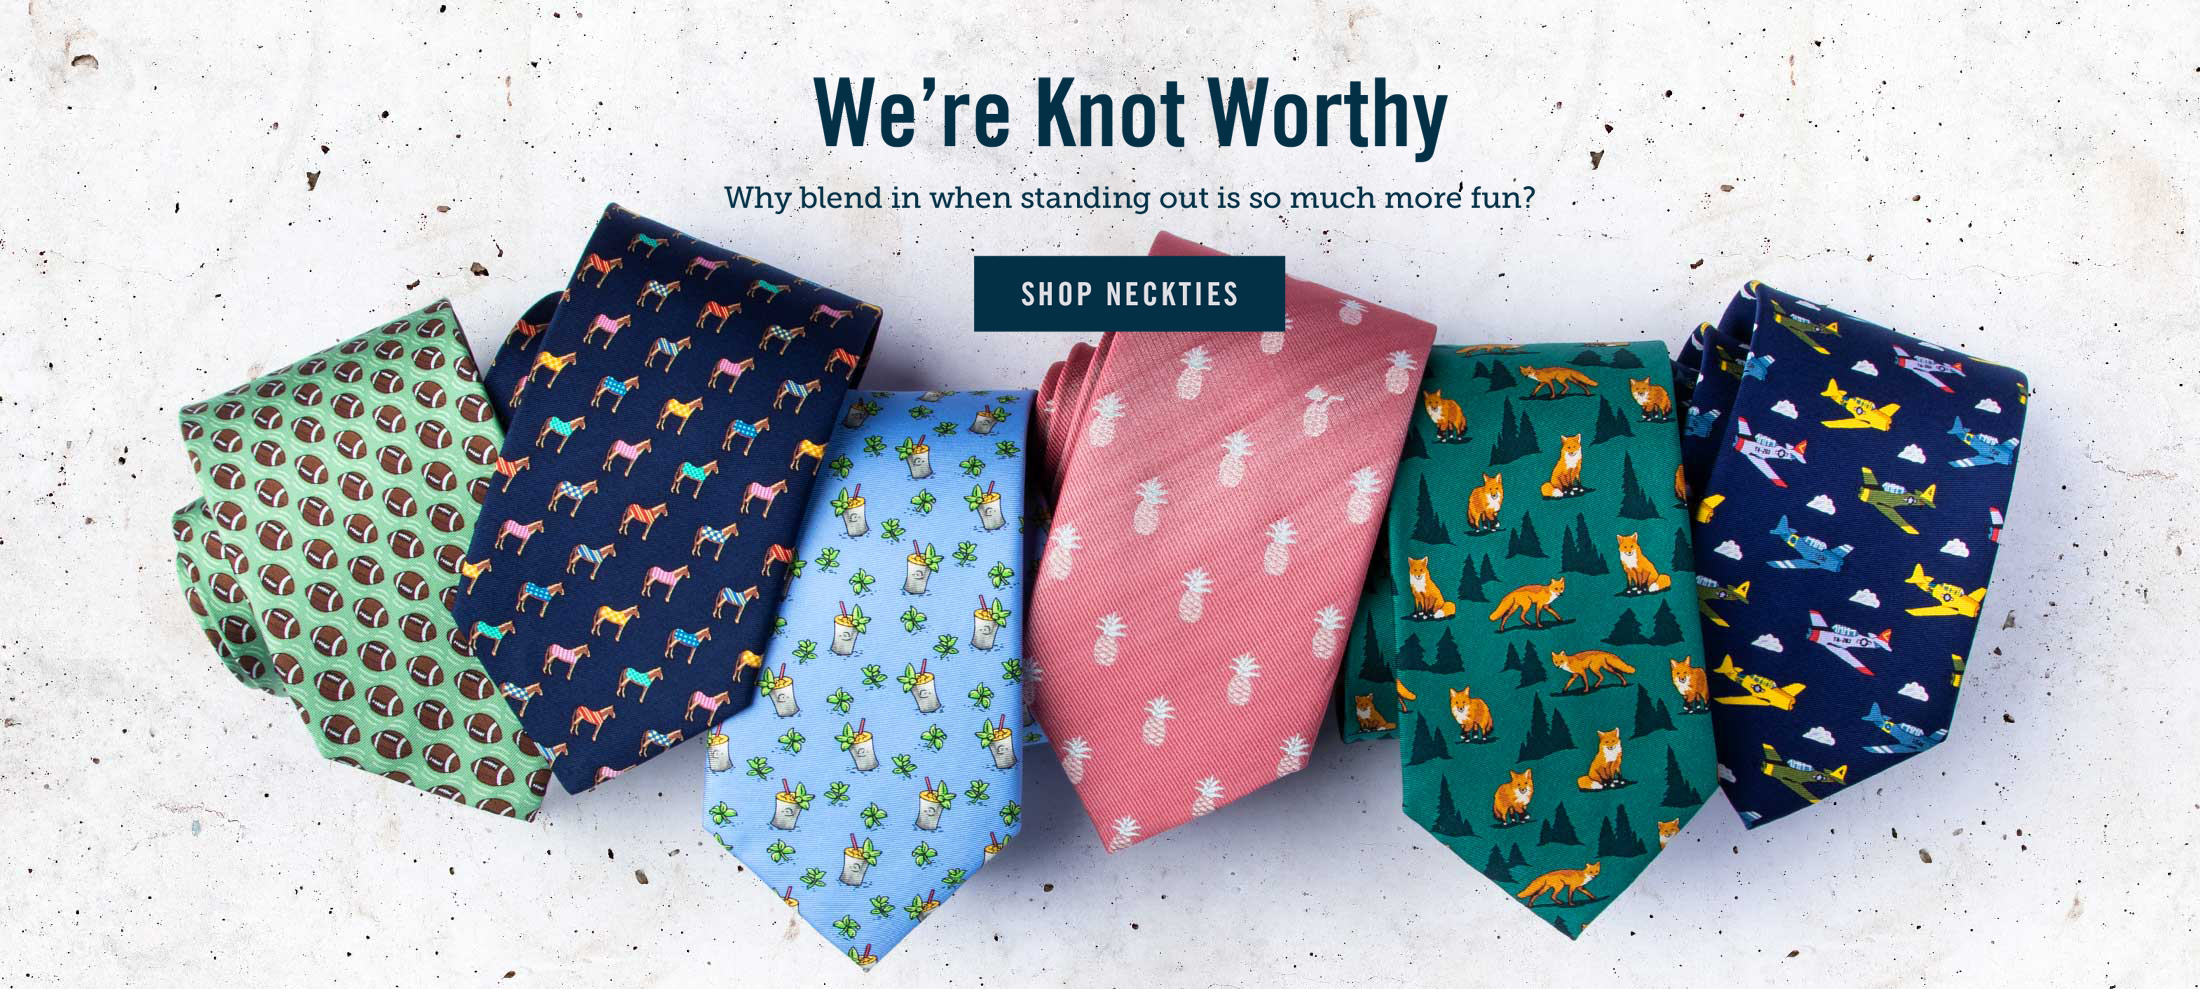 We're Knot Worthy - Shop Neckties